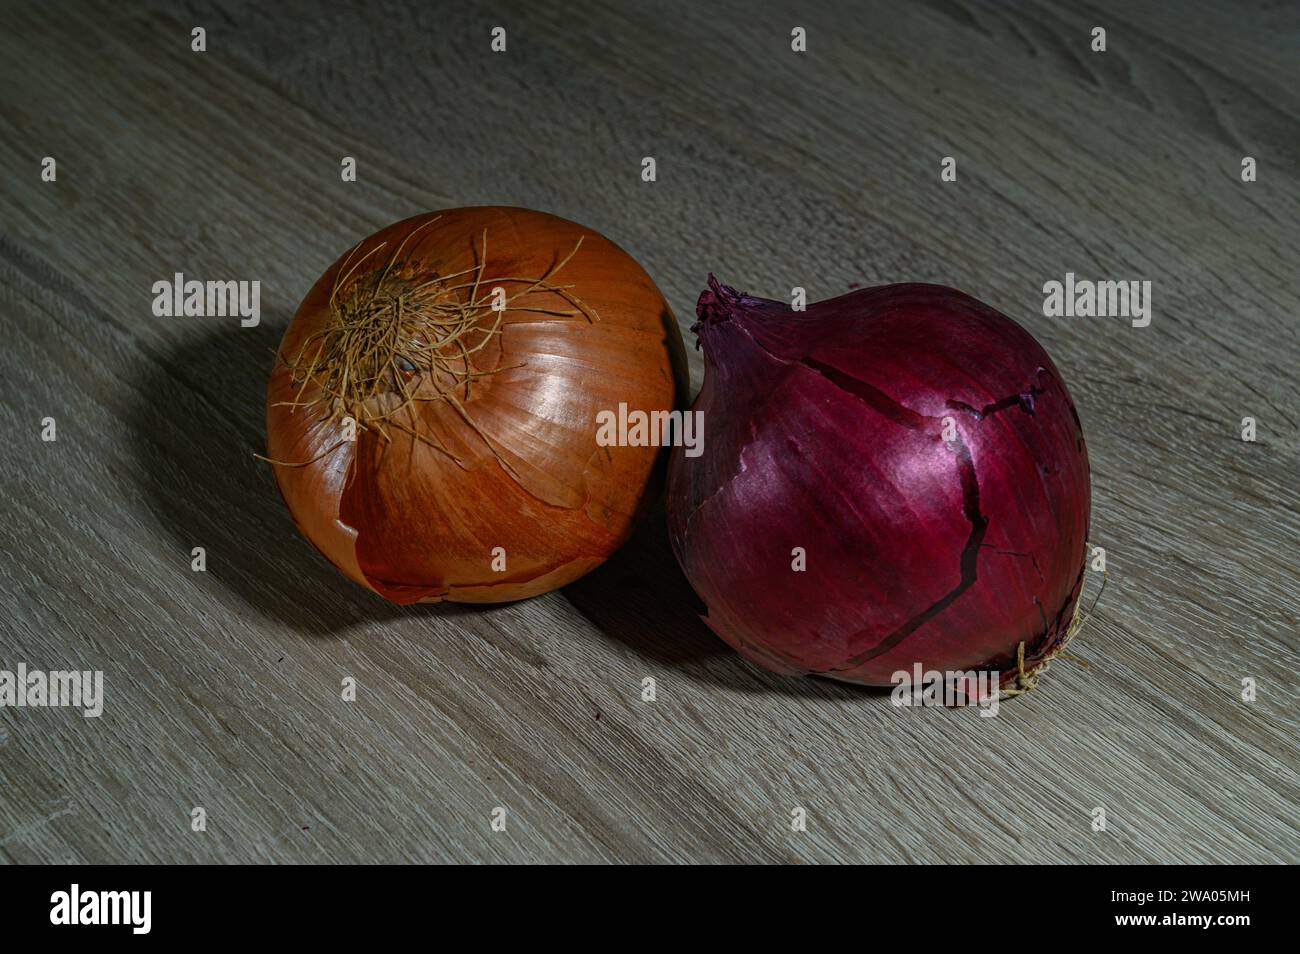 Zwei Zwiebeln, eine orange spanische Zwiebel und eine rote oder rote Zwiebel, ganz, roh, ungeschält weiß und orange auf einem hellen Holztisch Stockfoto